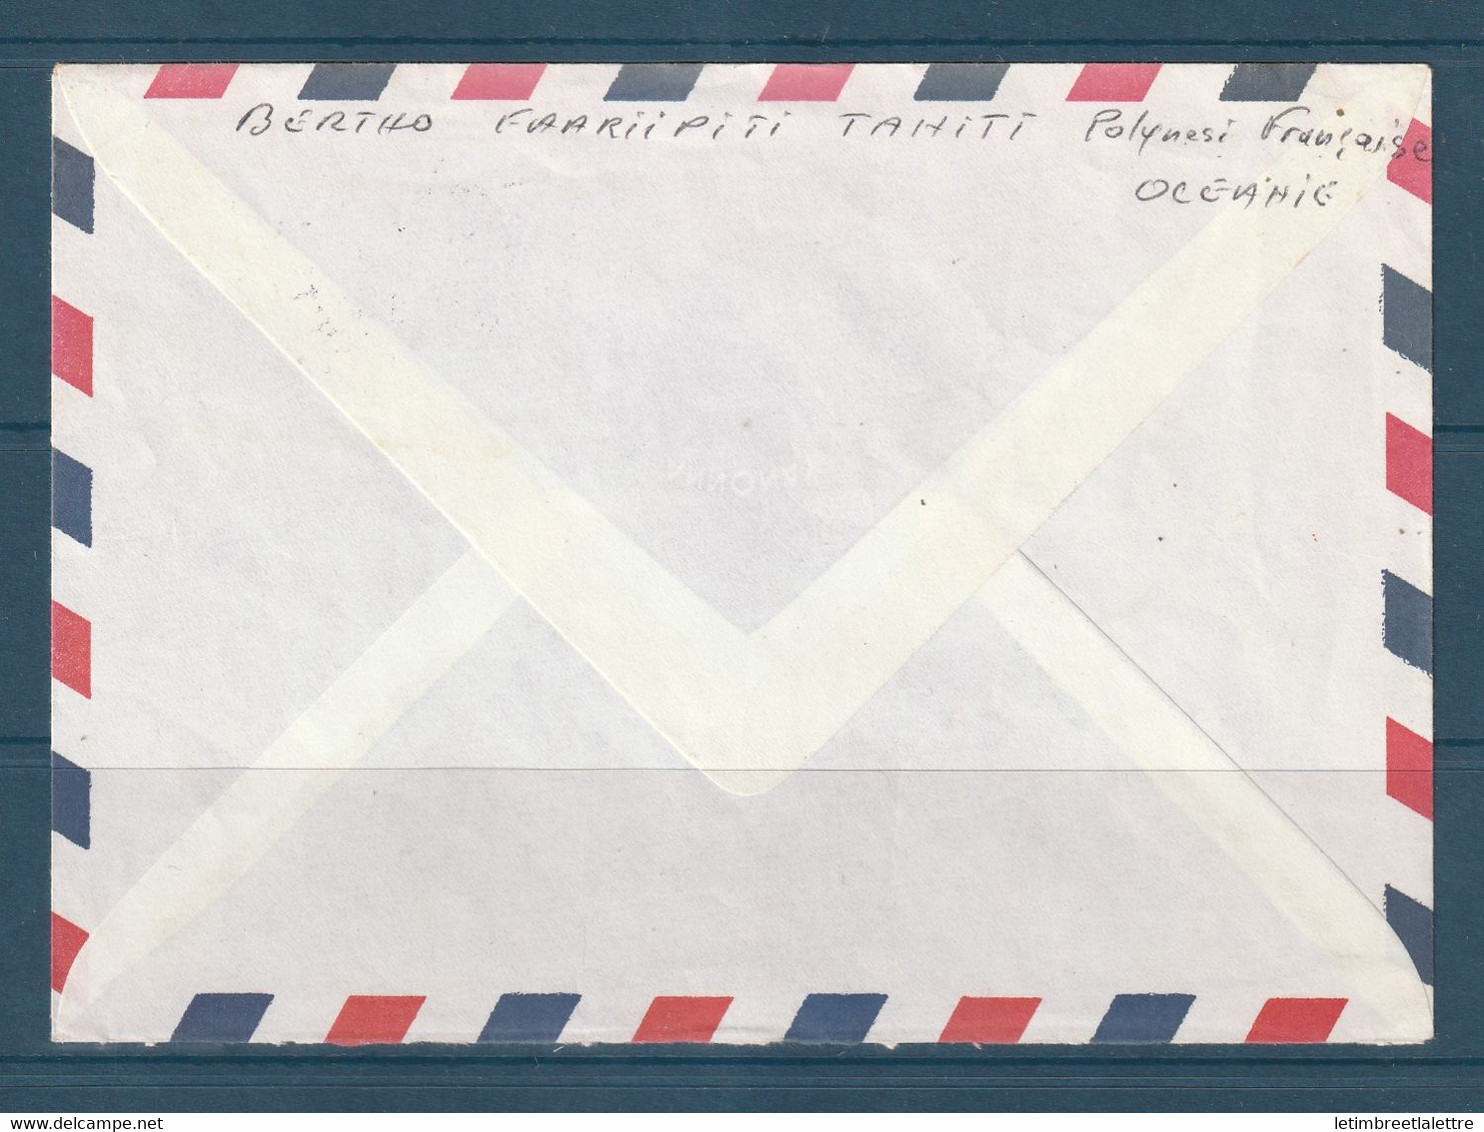 ⭐ Polynésie - Poste Aérienne - YT N° 157 - Enveloppe Décorée De Tahiti ( Pirae ) Pour La France - 1981 ⭐ - Storia Postale